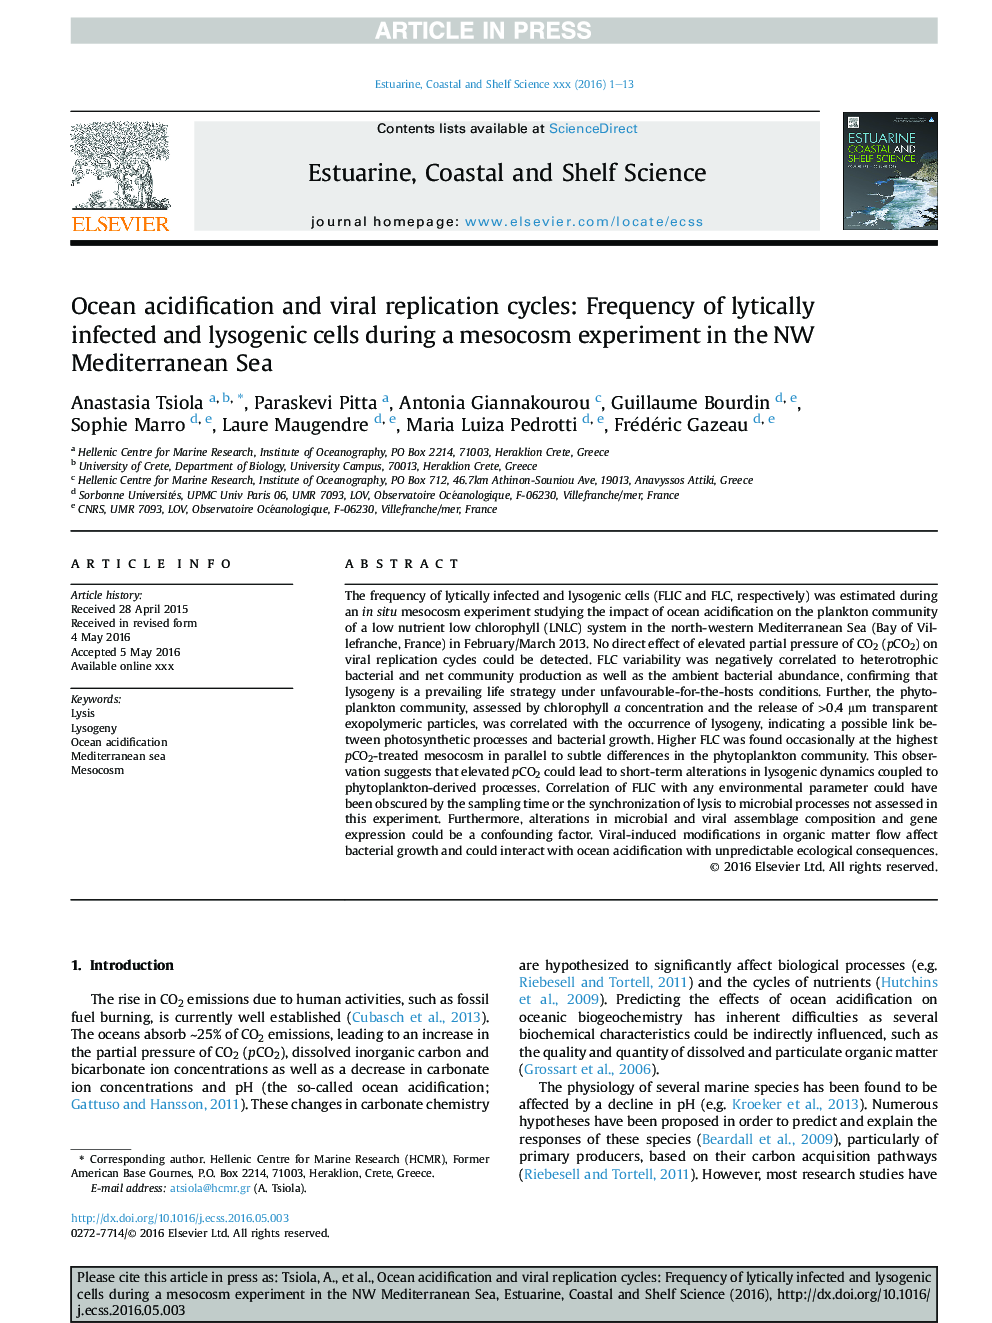 اسیدیته اقیانوس و چرخه های تکرار ویروسی: فراوانی سلول های آلوده و لیزوژنیک در طی آزمایش آزمایشی در دریای مدیترانه شمال غربی 